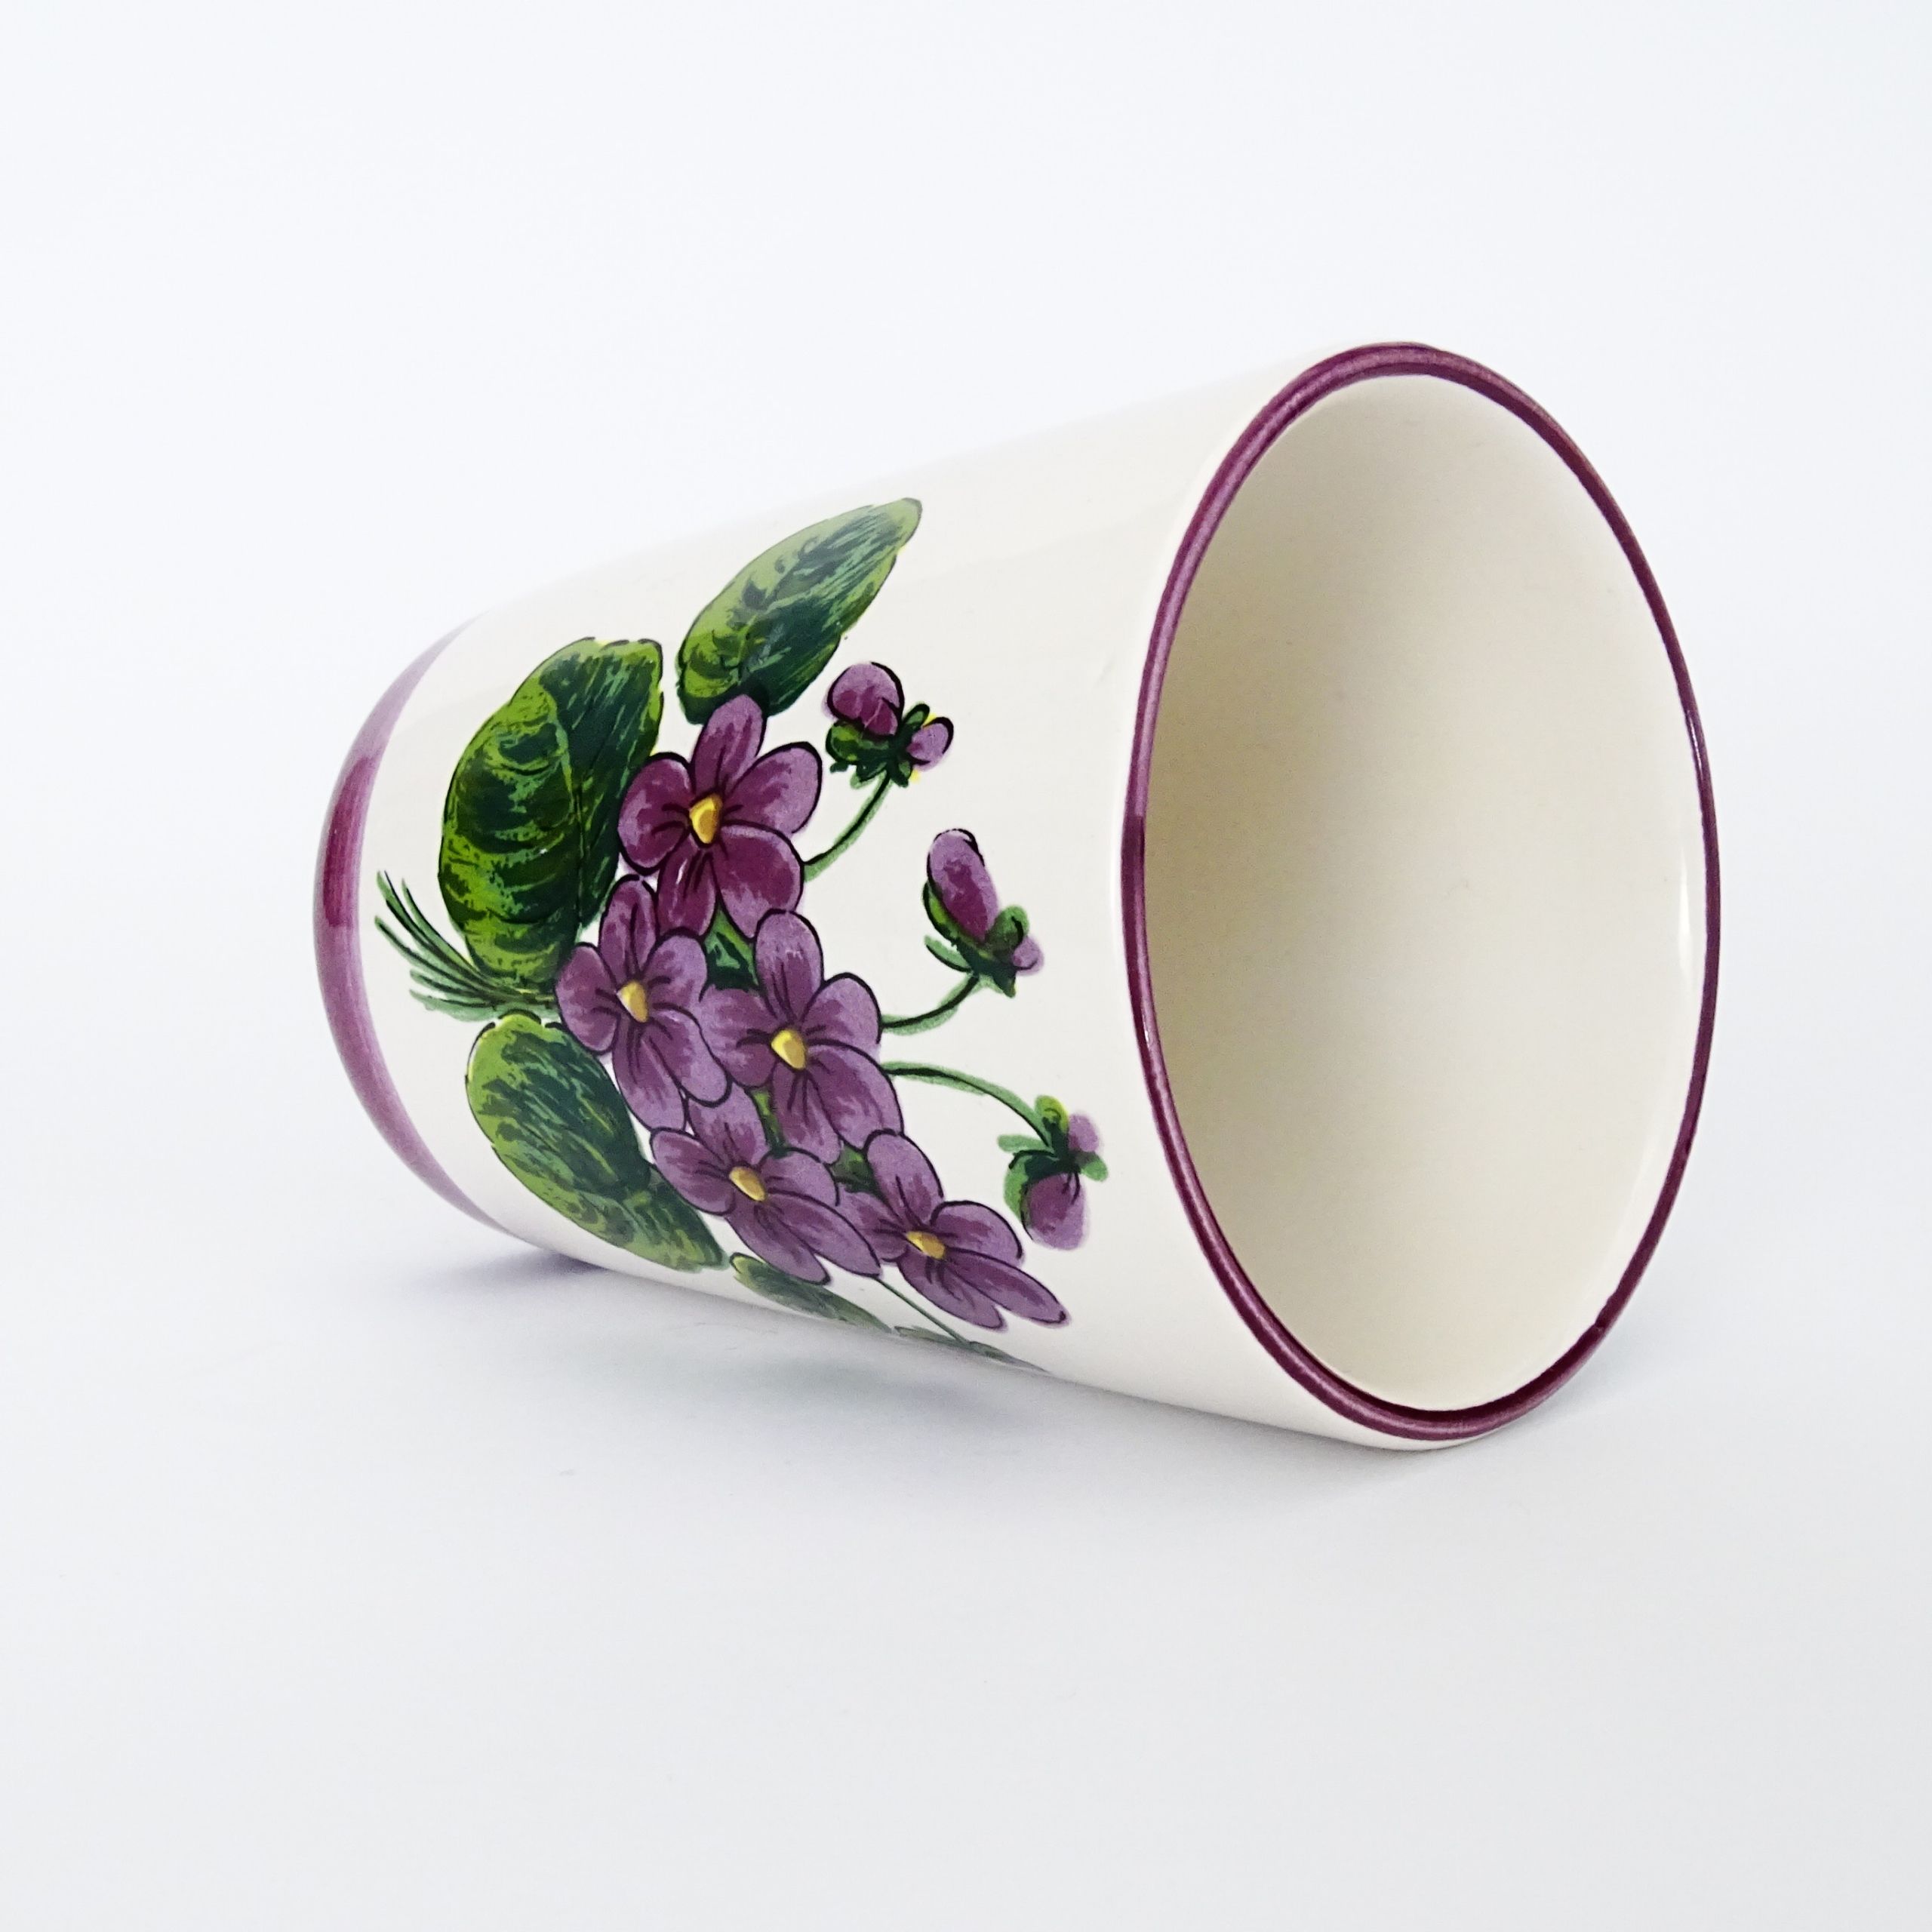 piękny ceramiczny kubek kwiaty fiołki